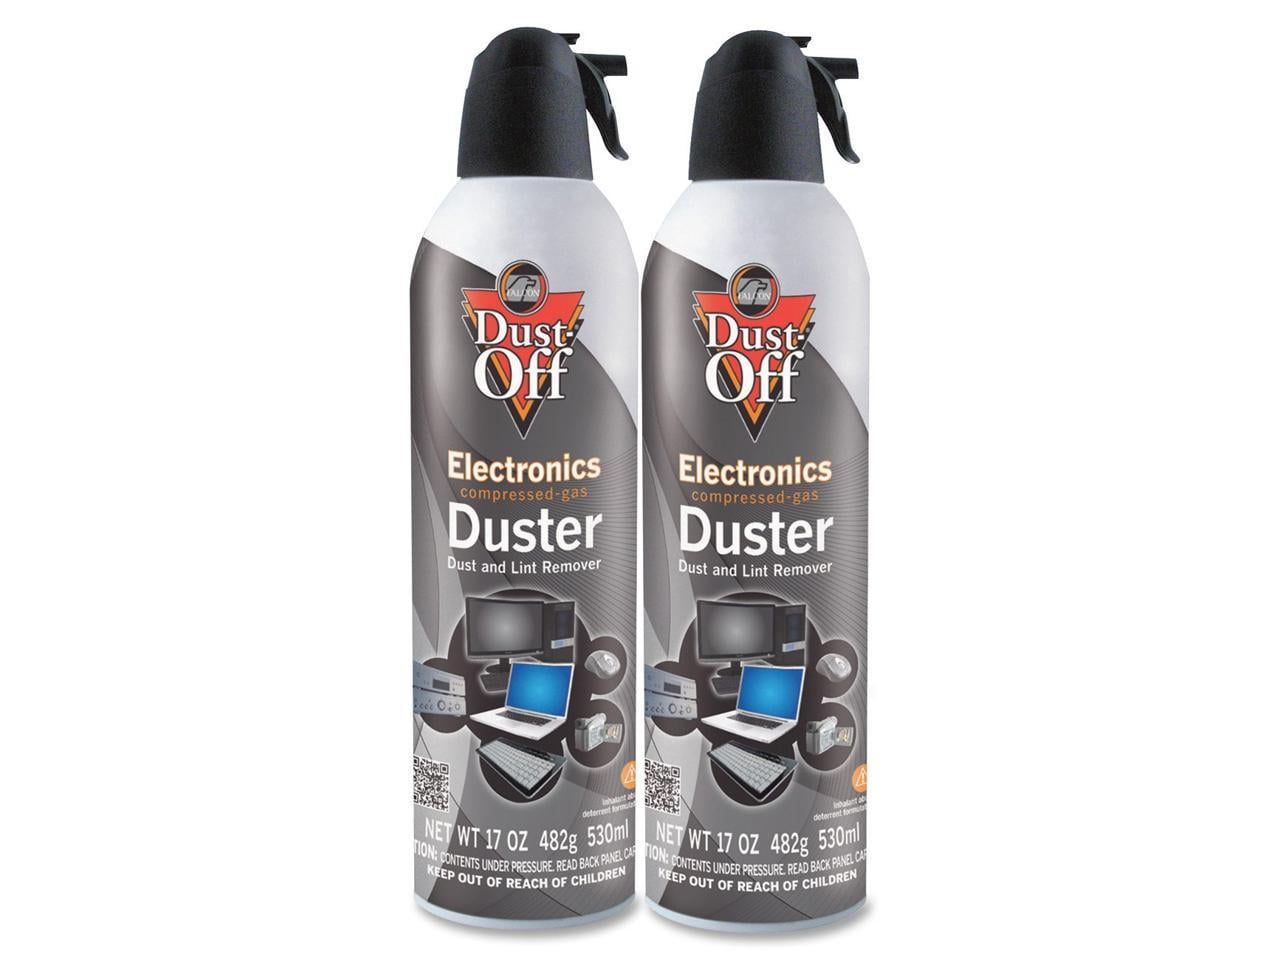 Fuller Brush Duster Spray – 2 Pack 15.5 oz - High Quality Multi